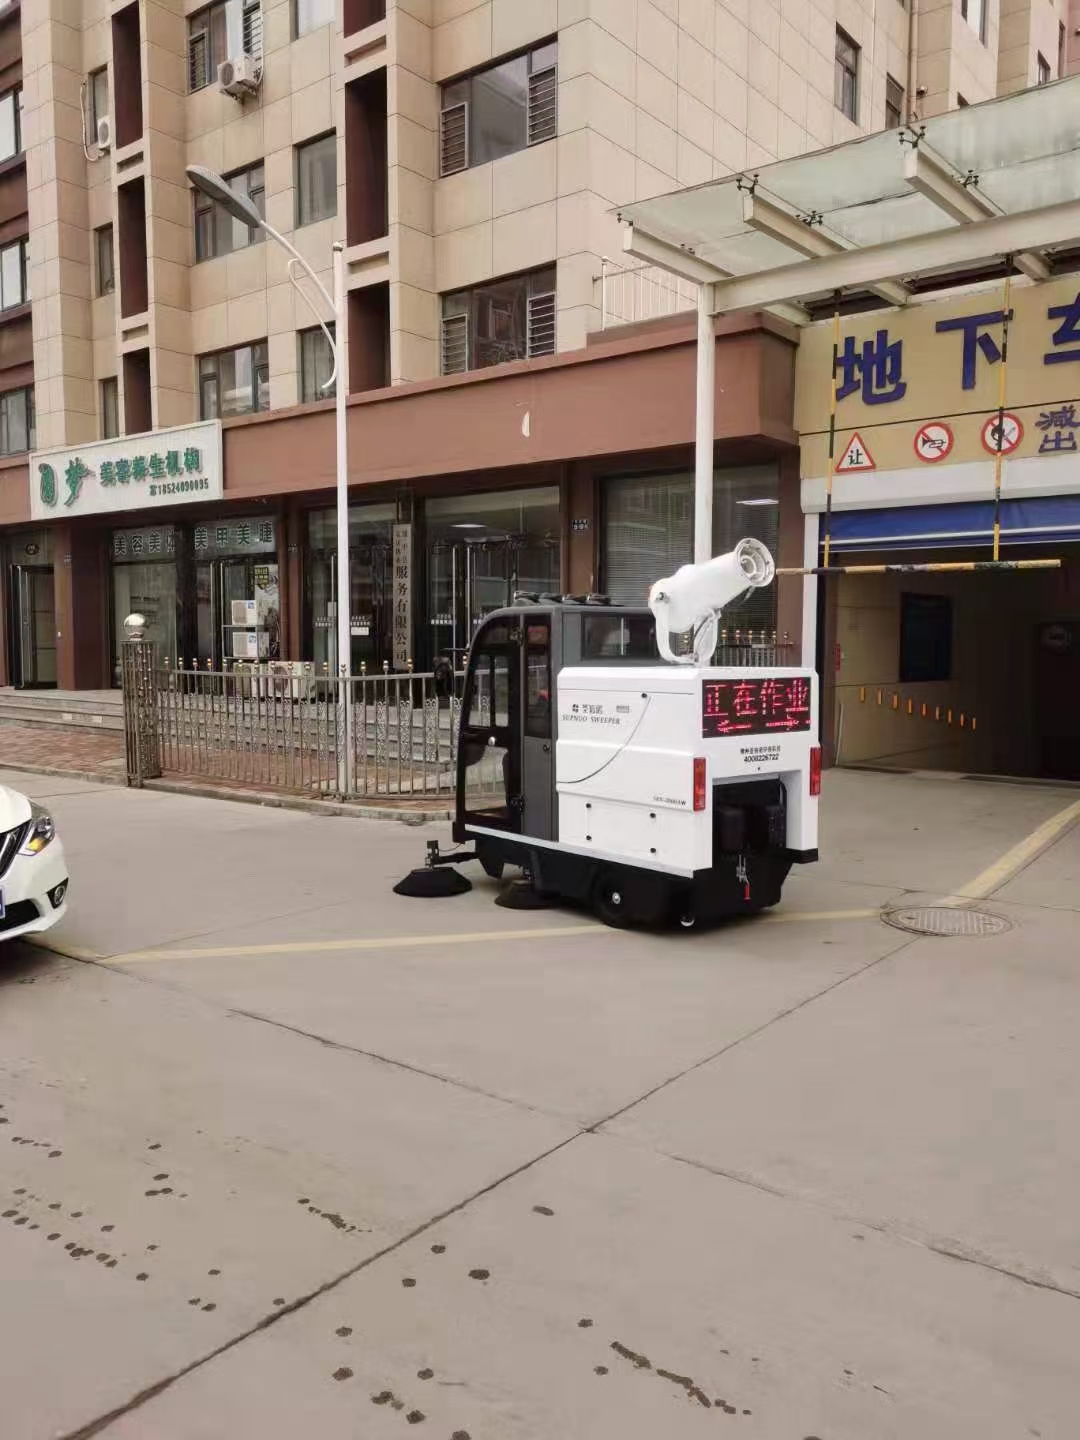 2000AW电动扫地车进驻辽宁葫芦岛某小区